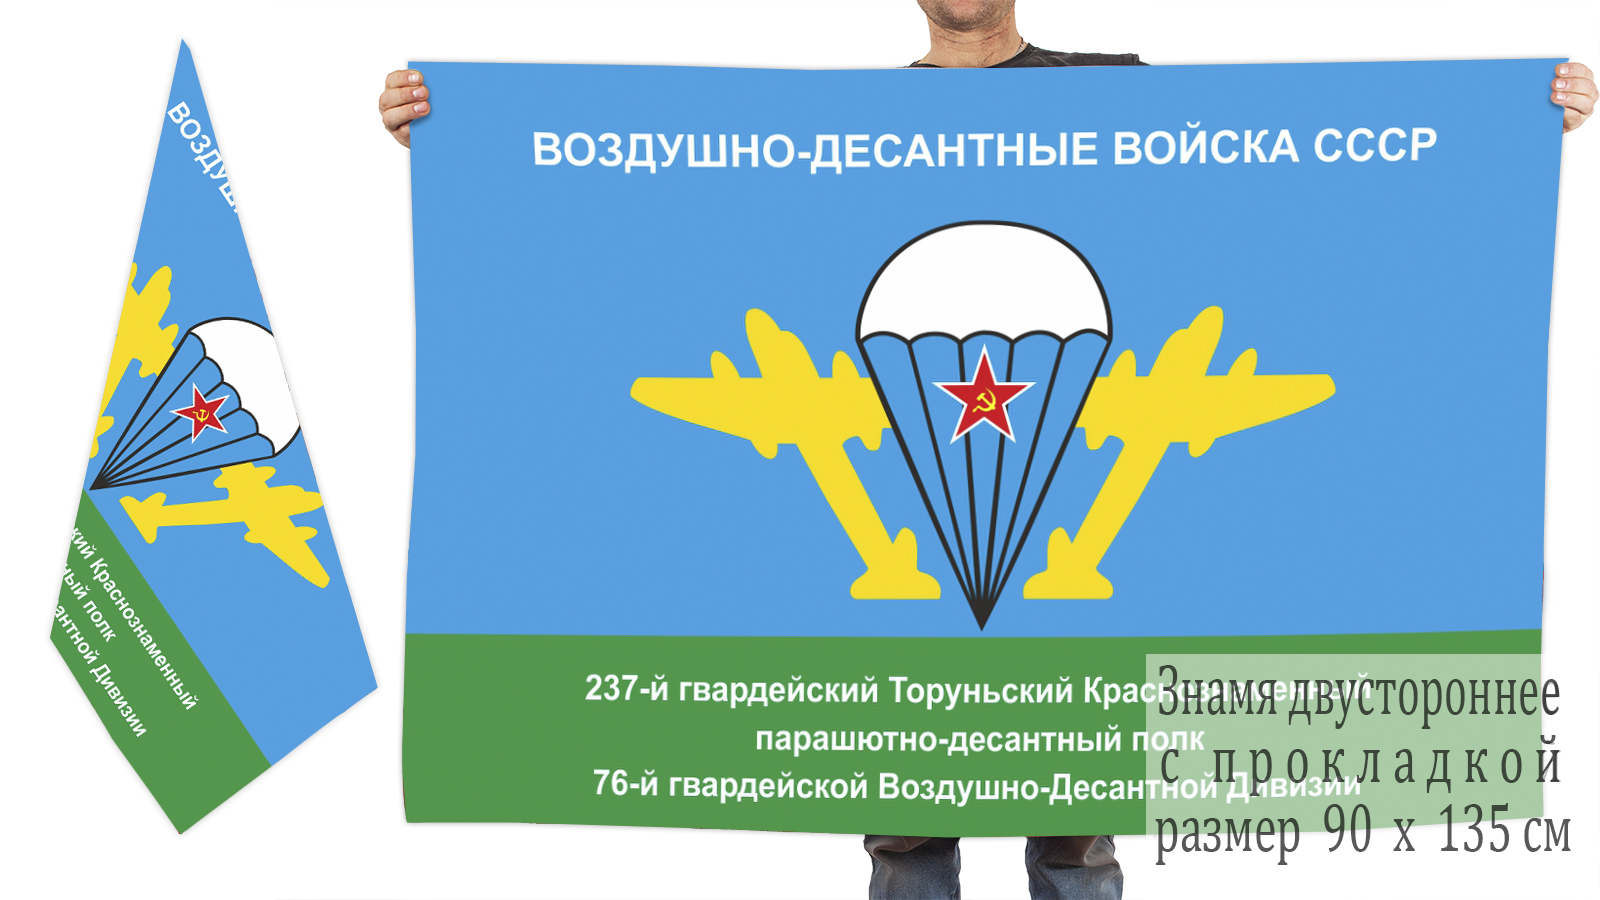 Двусторонний флаг 237 Гв. парашютно-десантного полка 76 Гв. ВДД